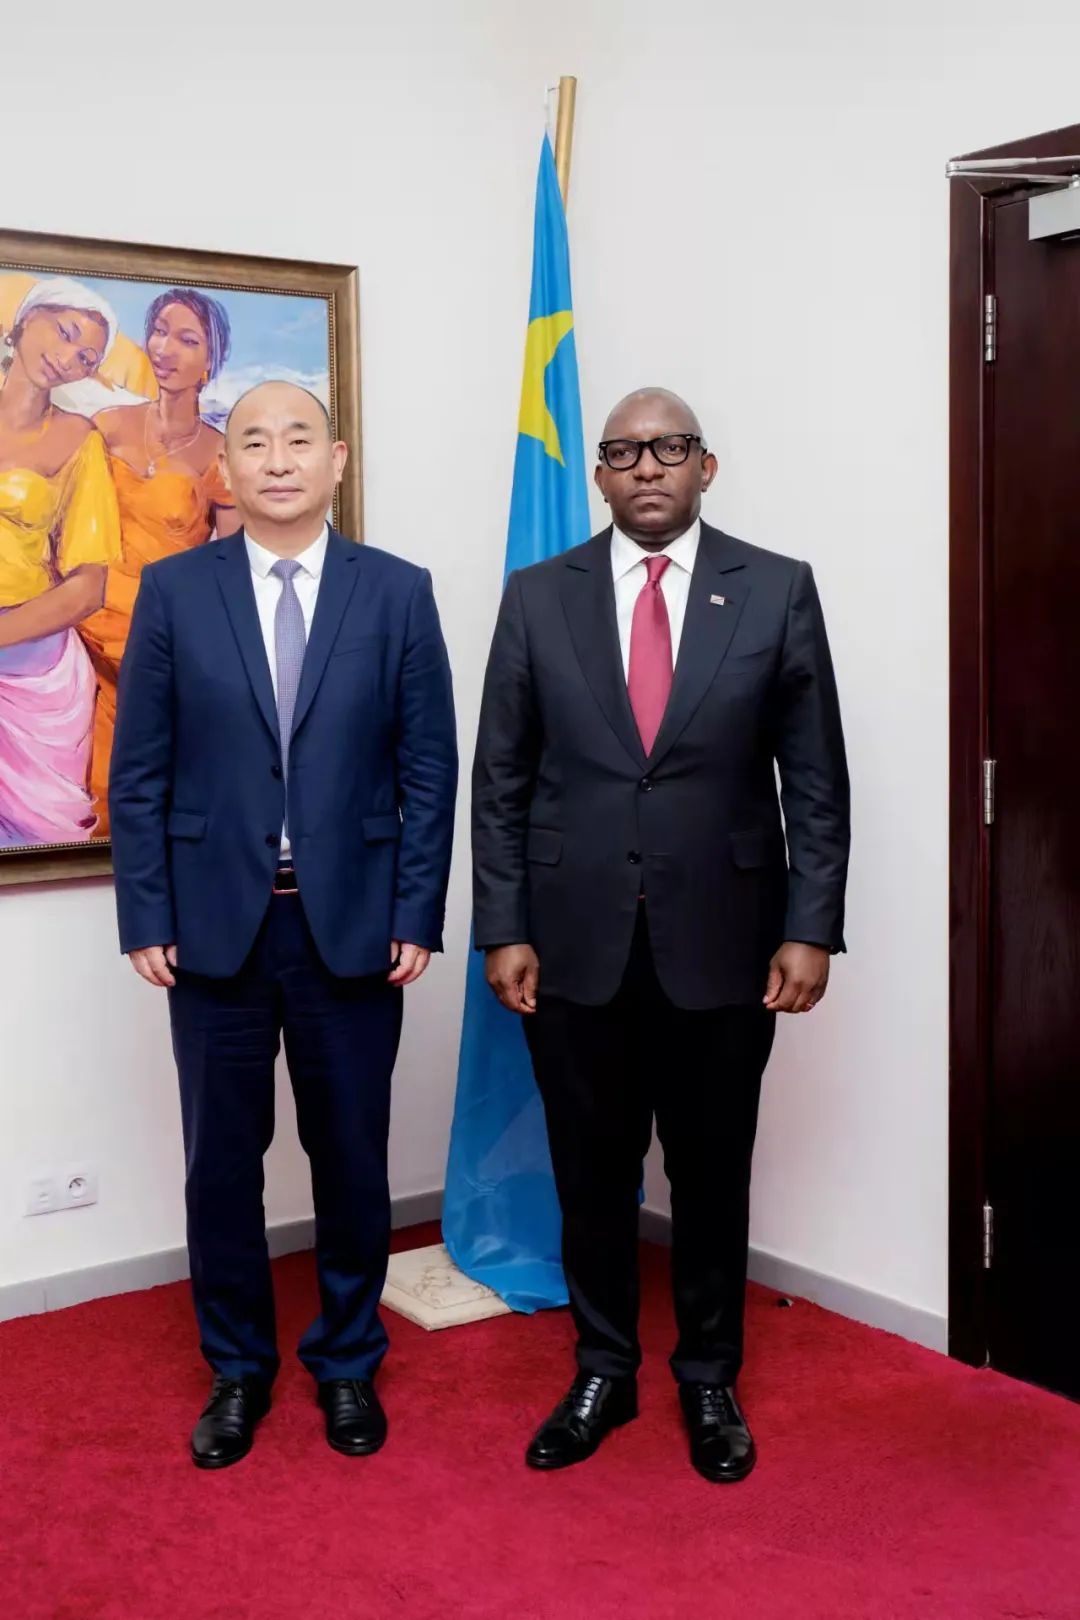 कांगो लोकतांत्रिक गणराज्य के प्रधान मंत्री ने लुओयांग मोलिब्डेनम उद्योग के अध्यक्ष सूर्य रुइवेन से मुलाकात की